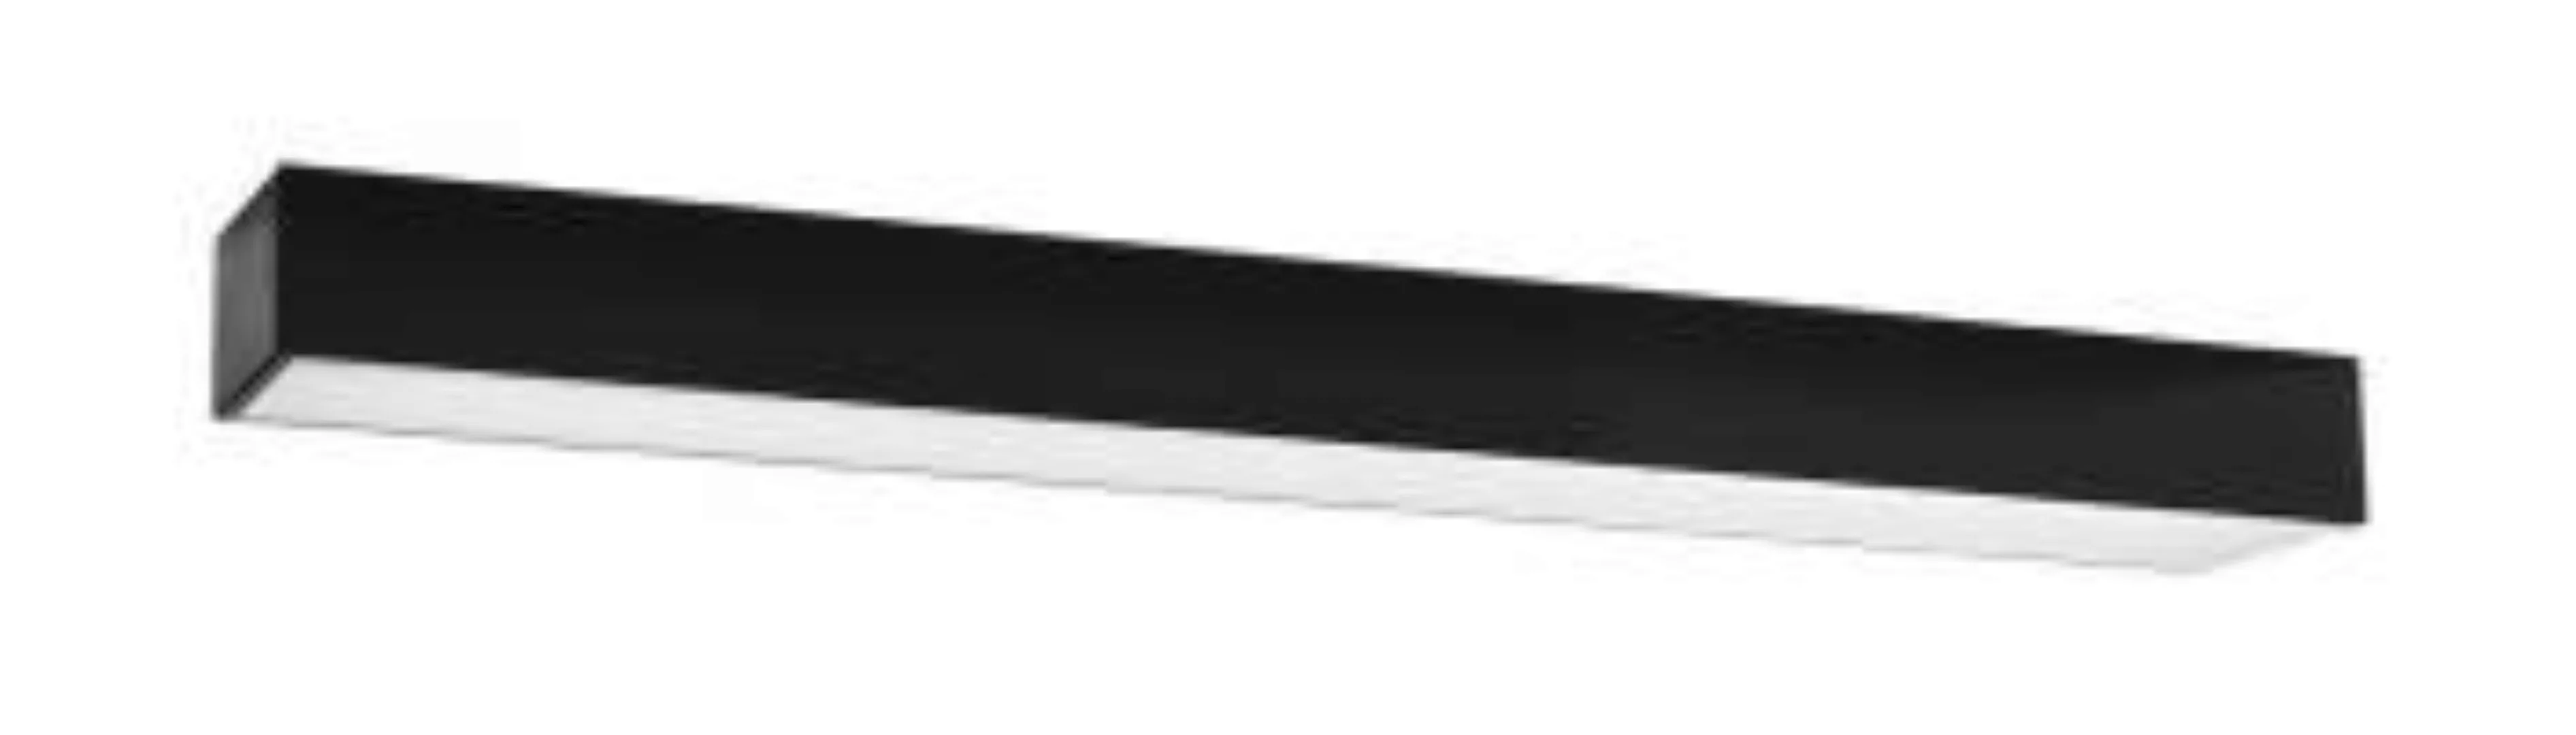 Schwarze Deckenlampe LED 67 cm H: 6 cm länglich flach günstig online kaufen